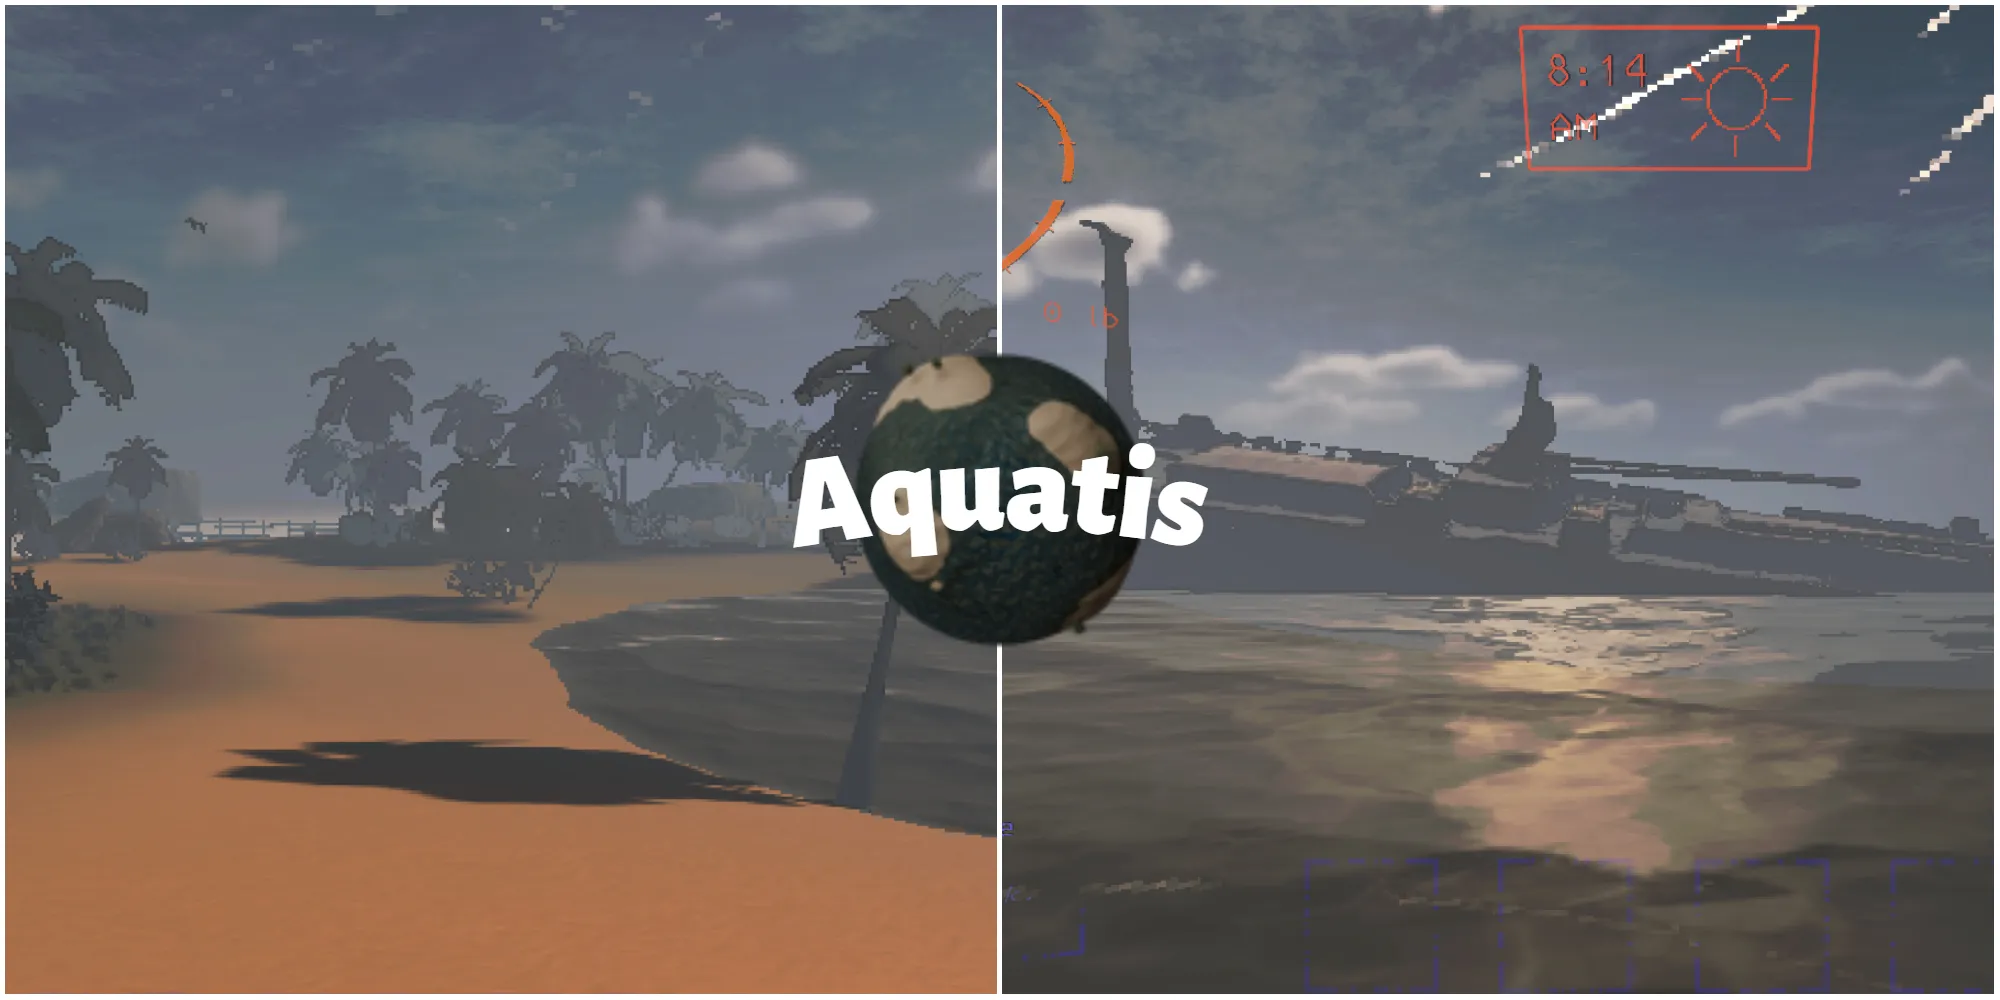 Aquatis modded 月球的截图，展示了一个沙滩世界和一艘搁浅的船